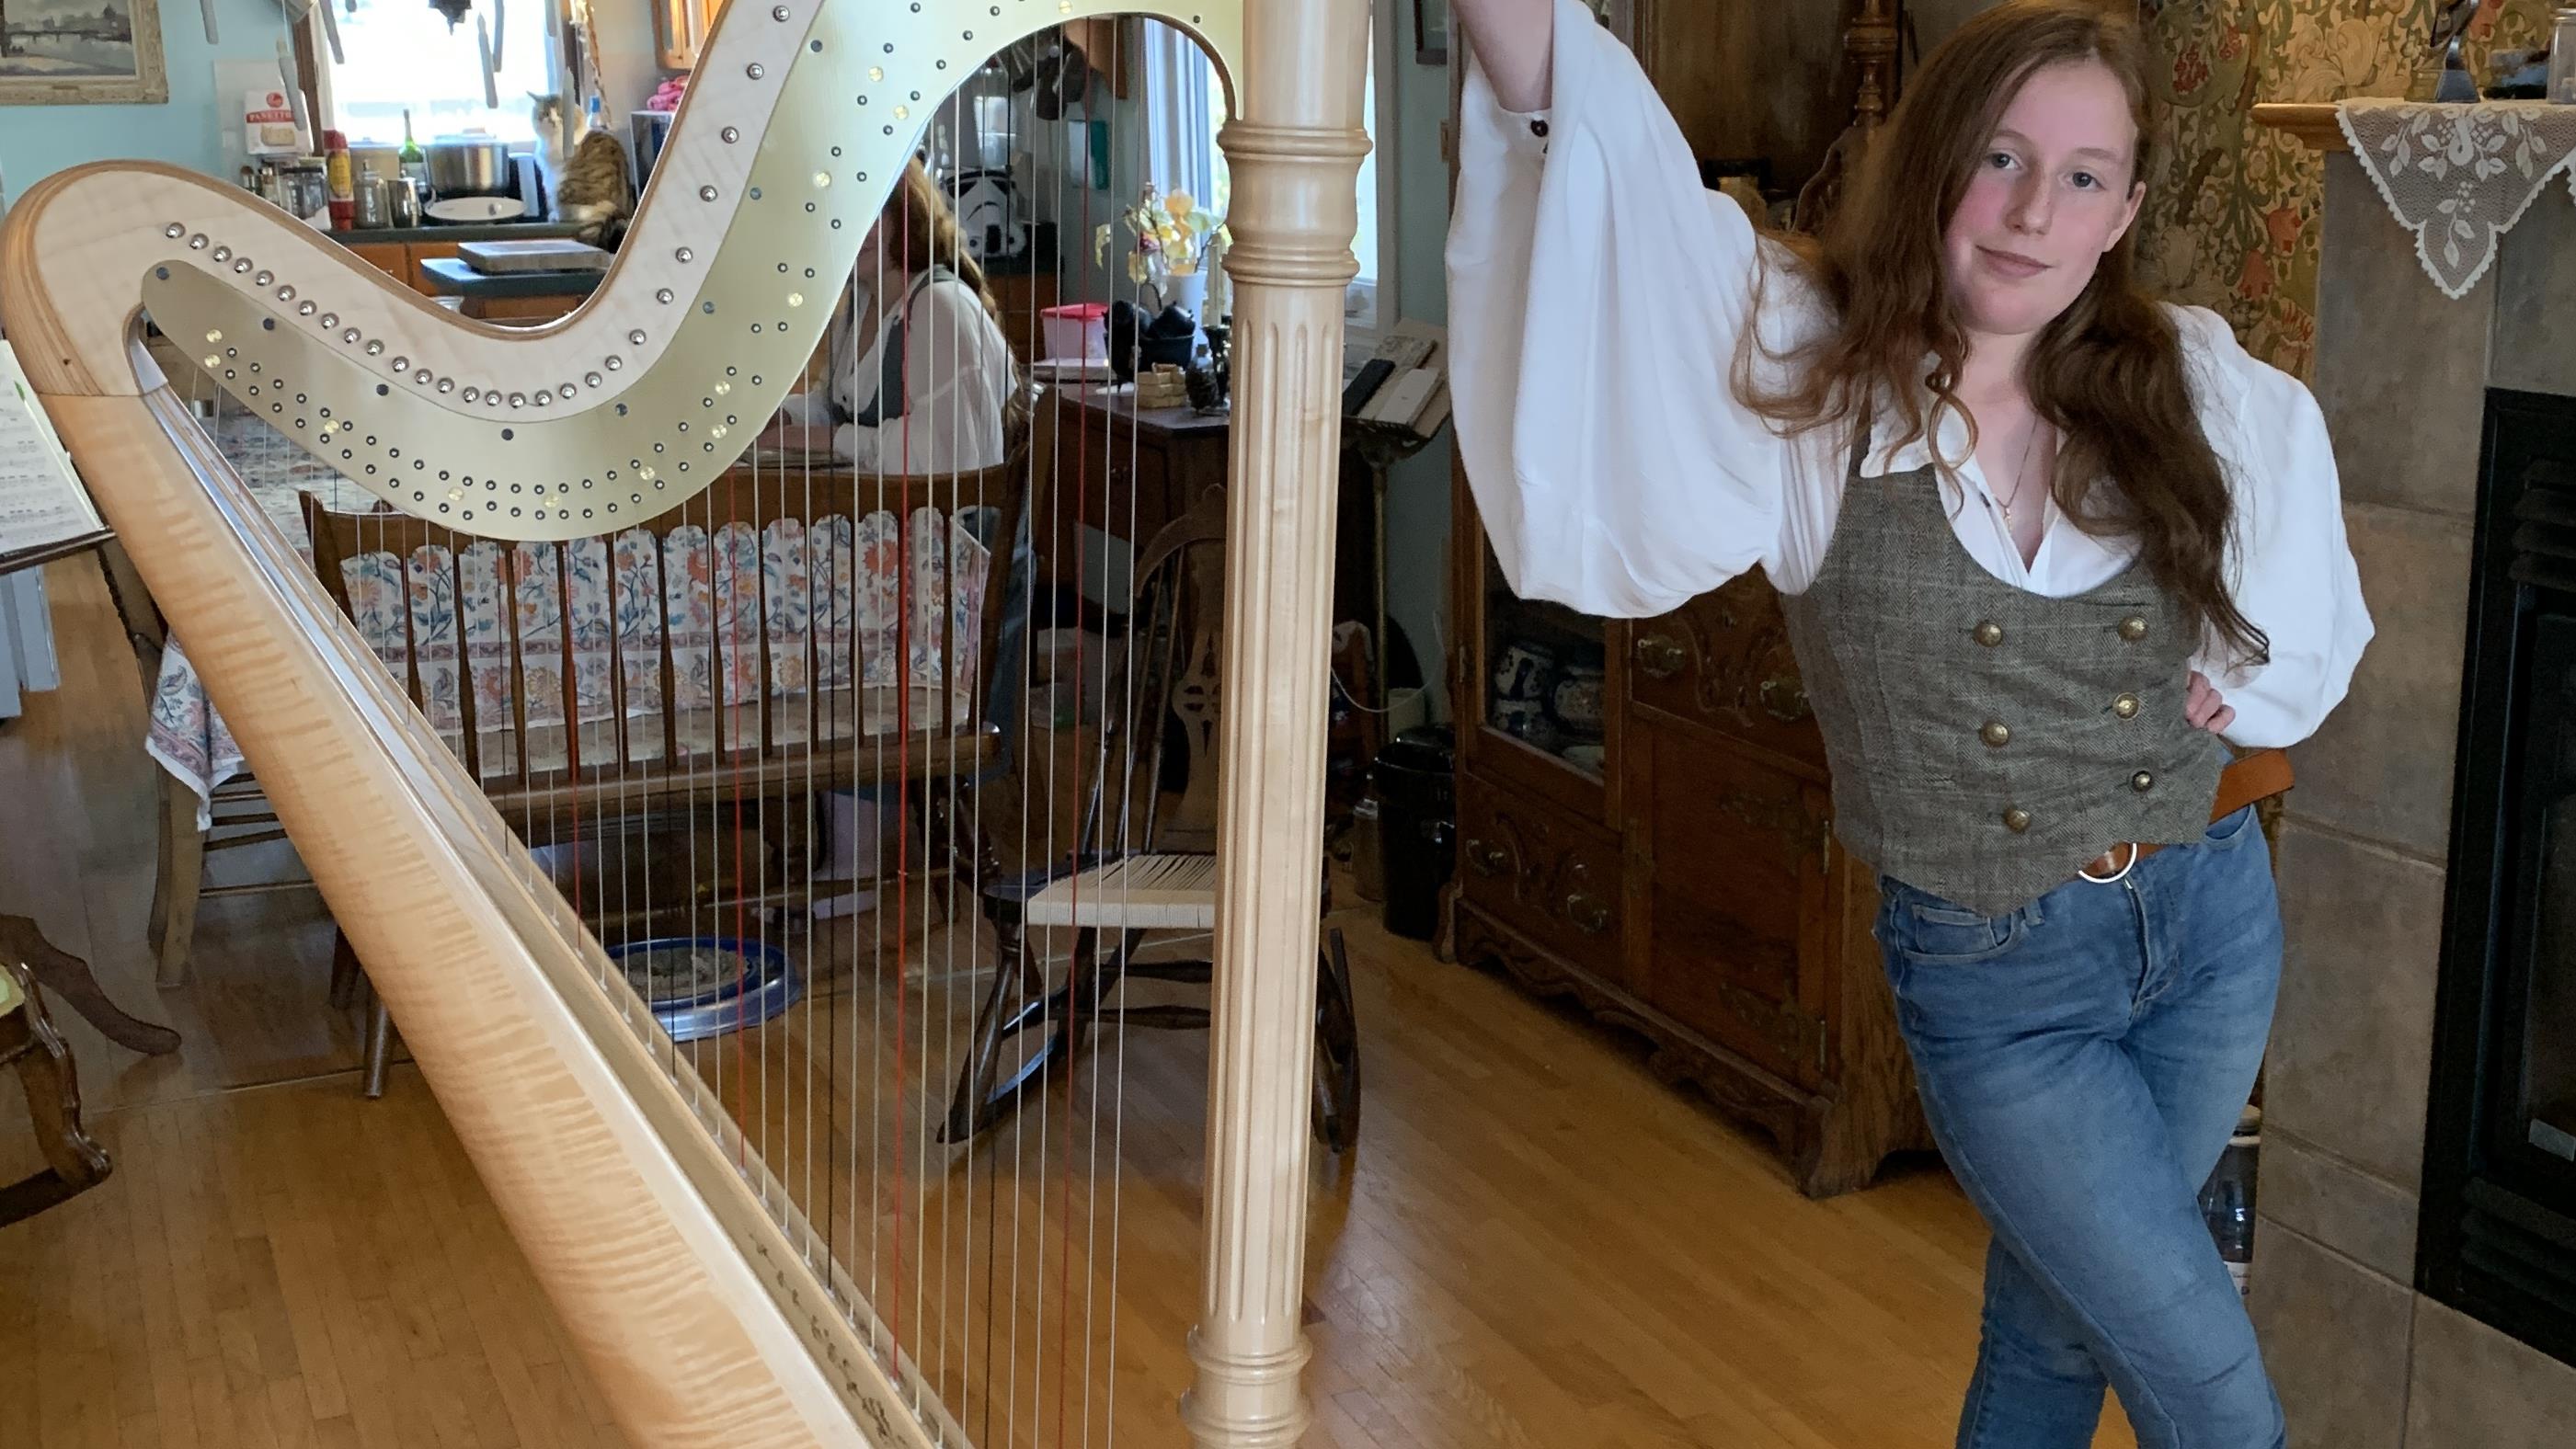 Rose-Aimé Davoine, passionnée de la harpe
Rose-Aimé Davoine, passionnée de la harpe